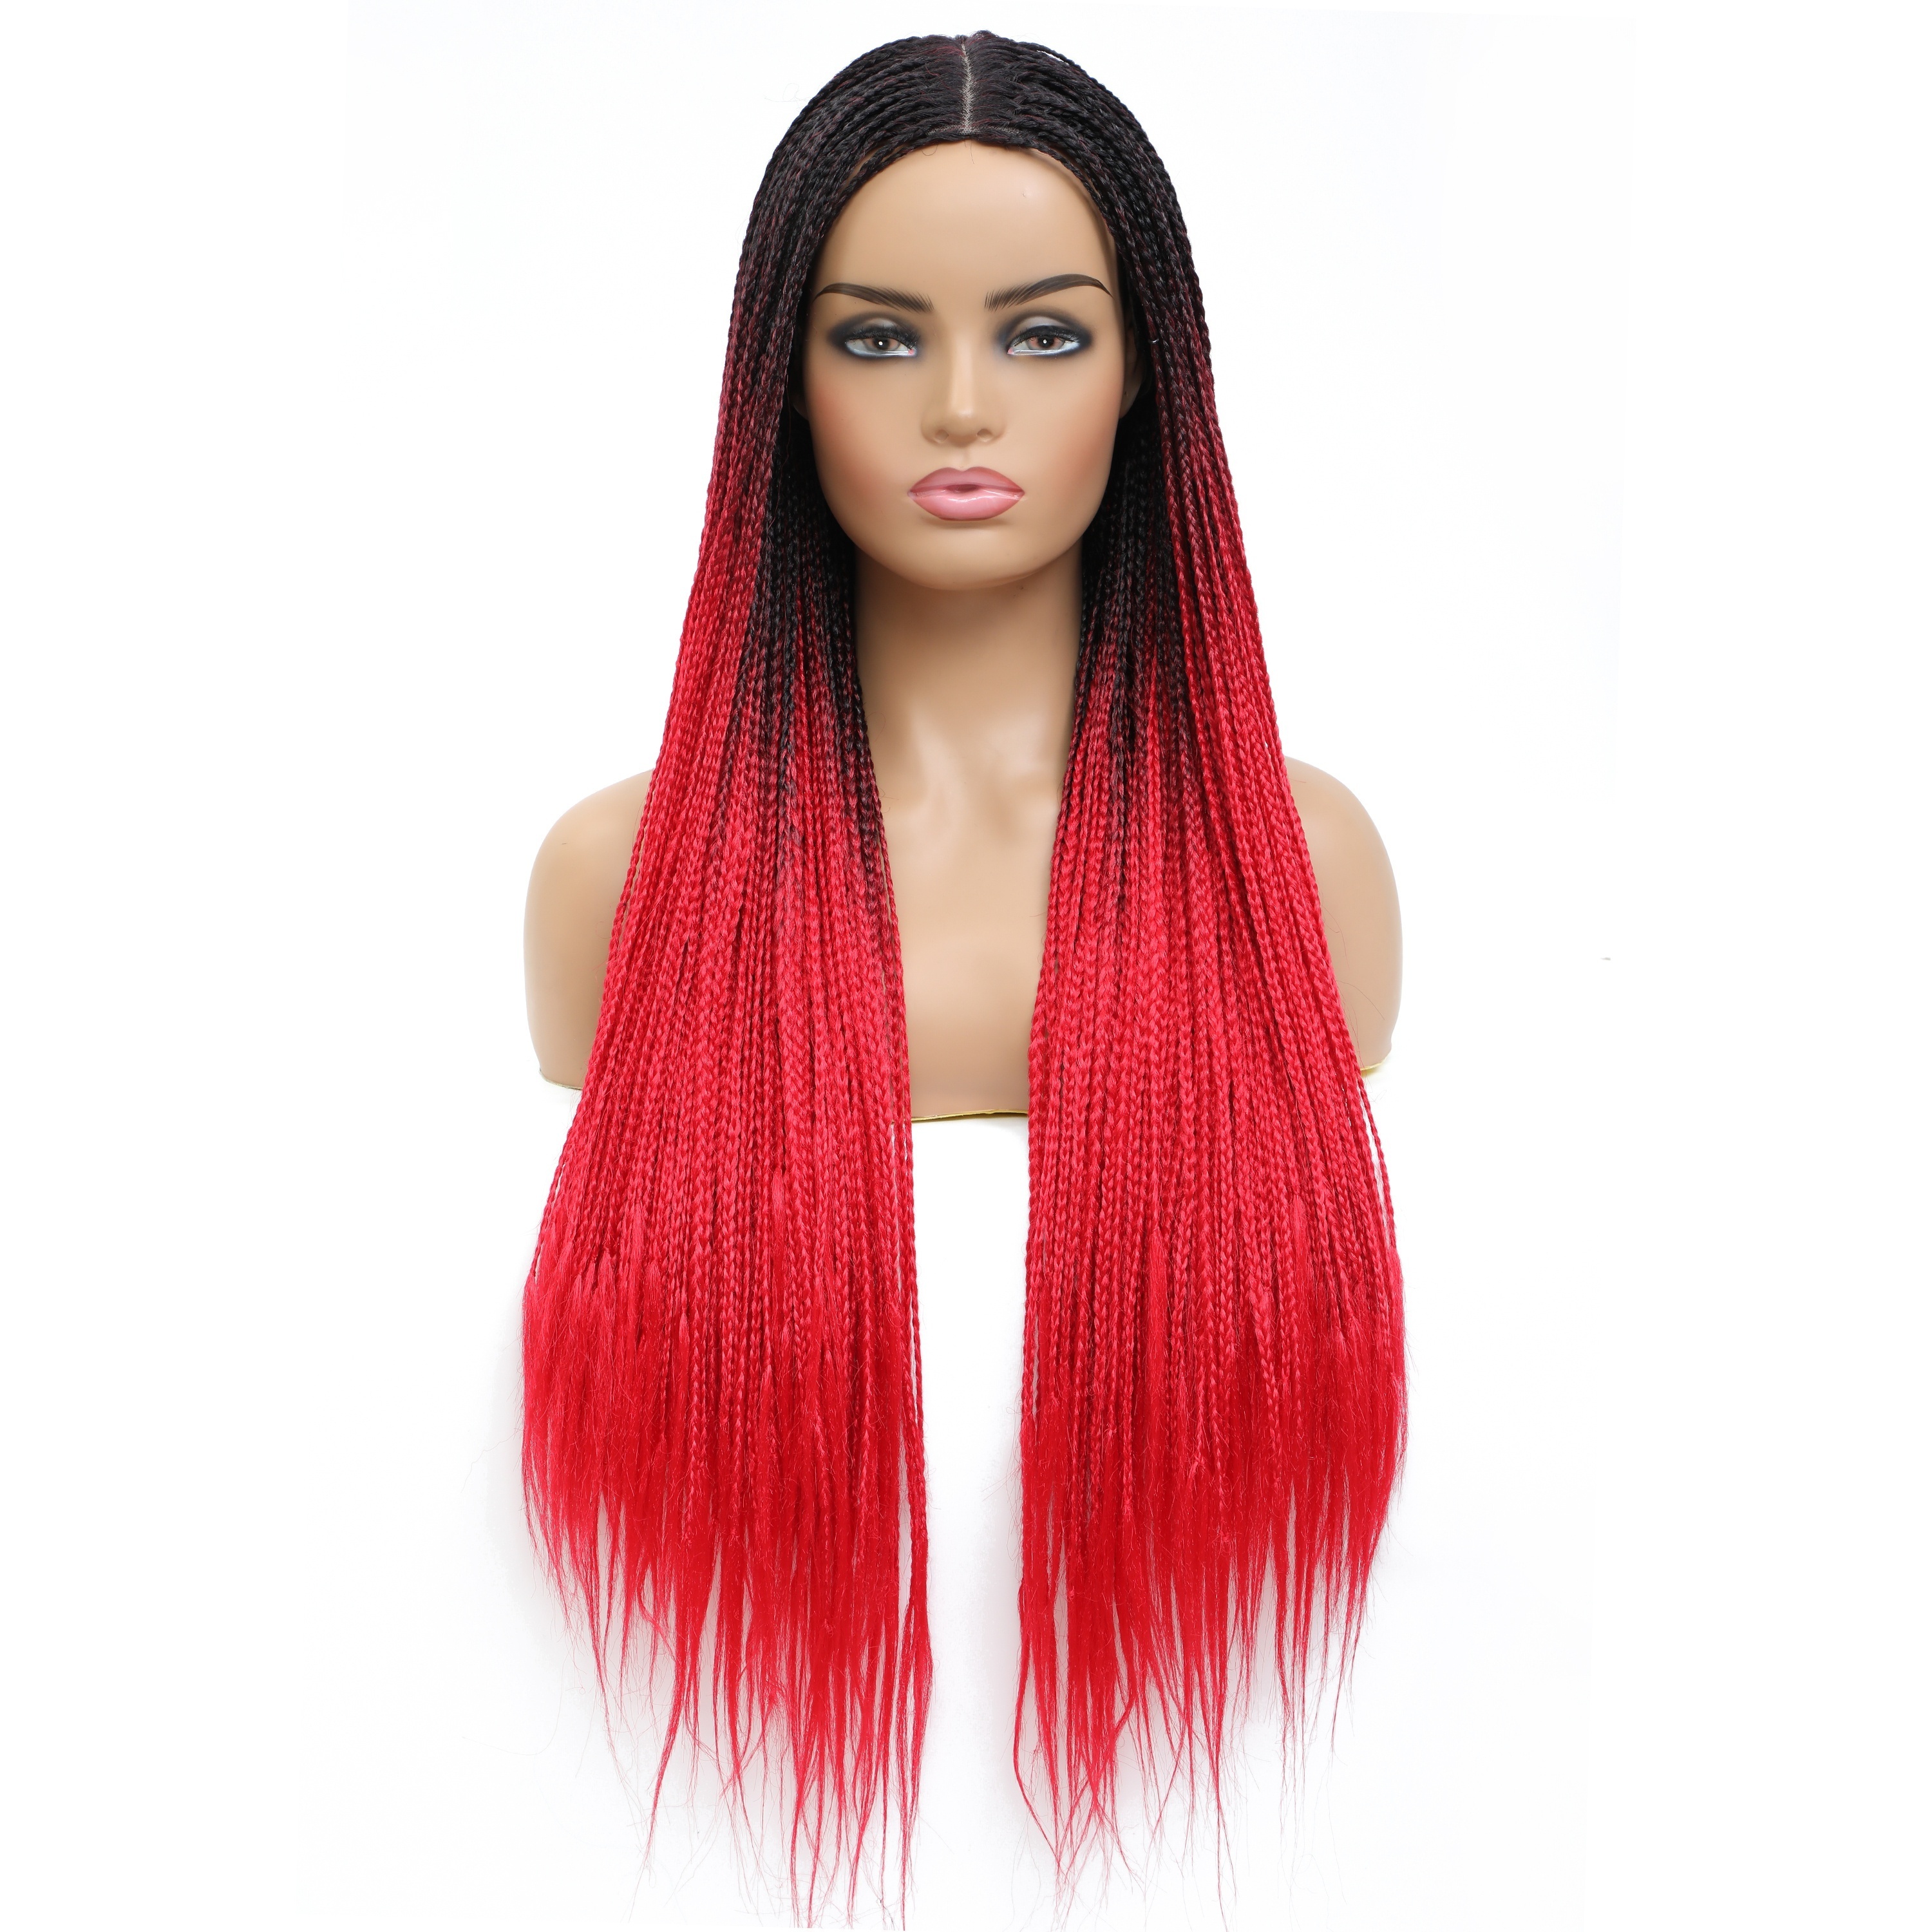 30Inch Long Box Braids Hair for Black Women 613 Brown Red Box Braid Hair  22strands/pcs